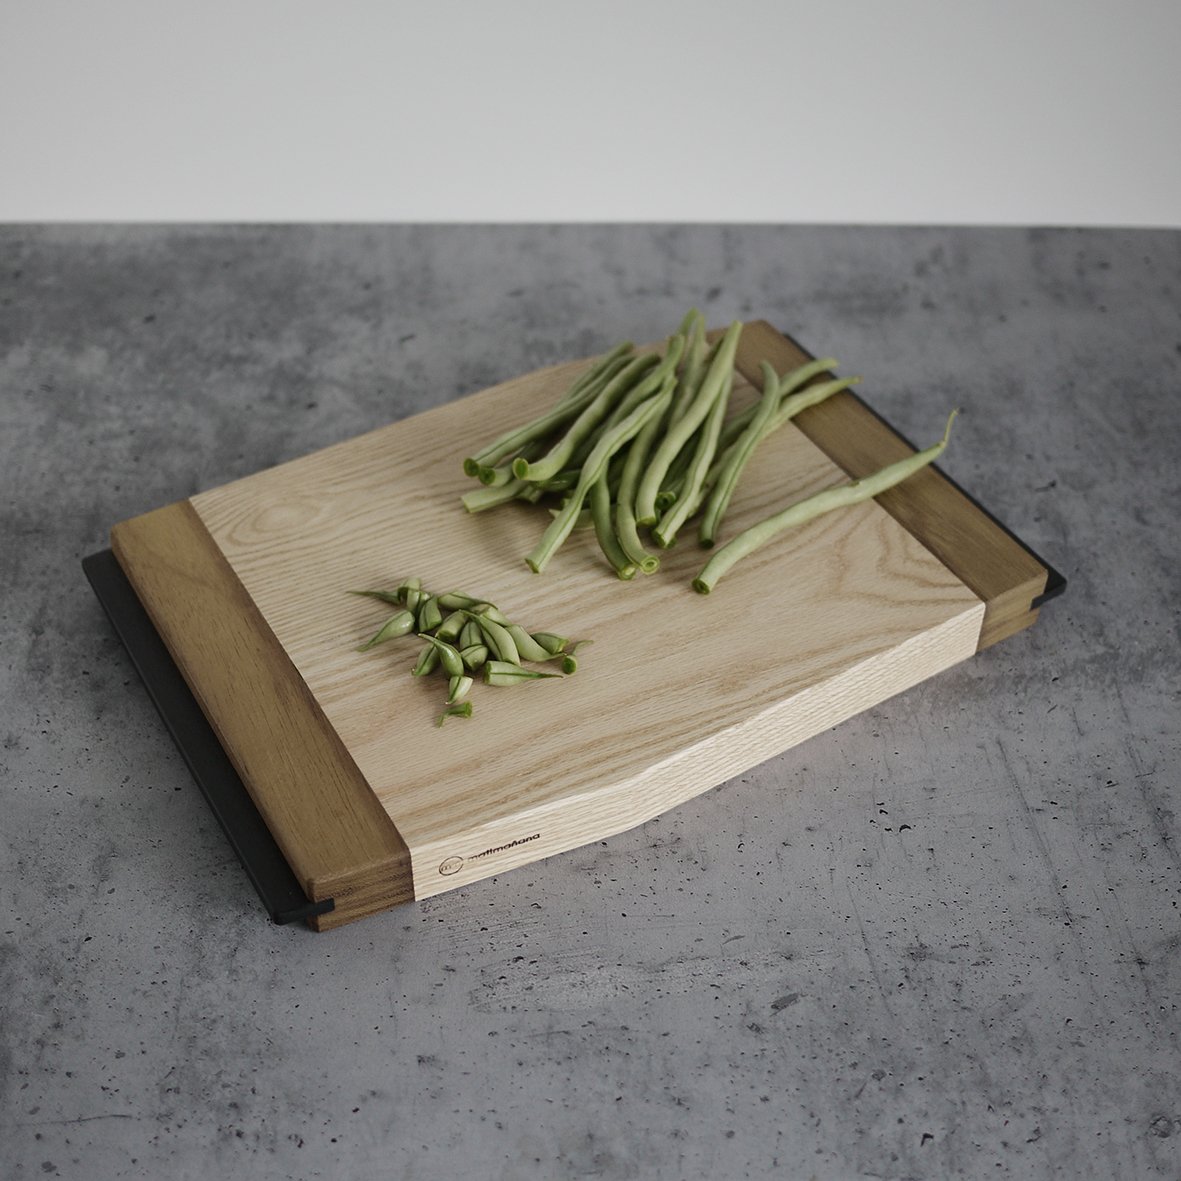 Image of cutting board